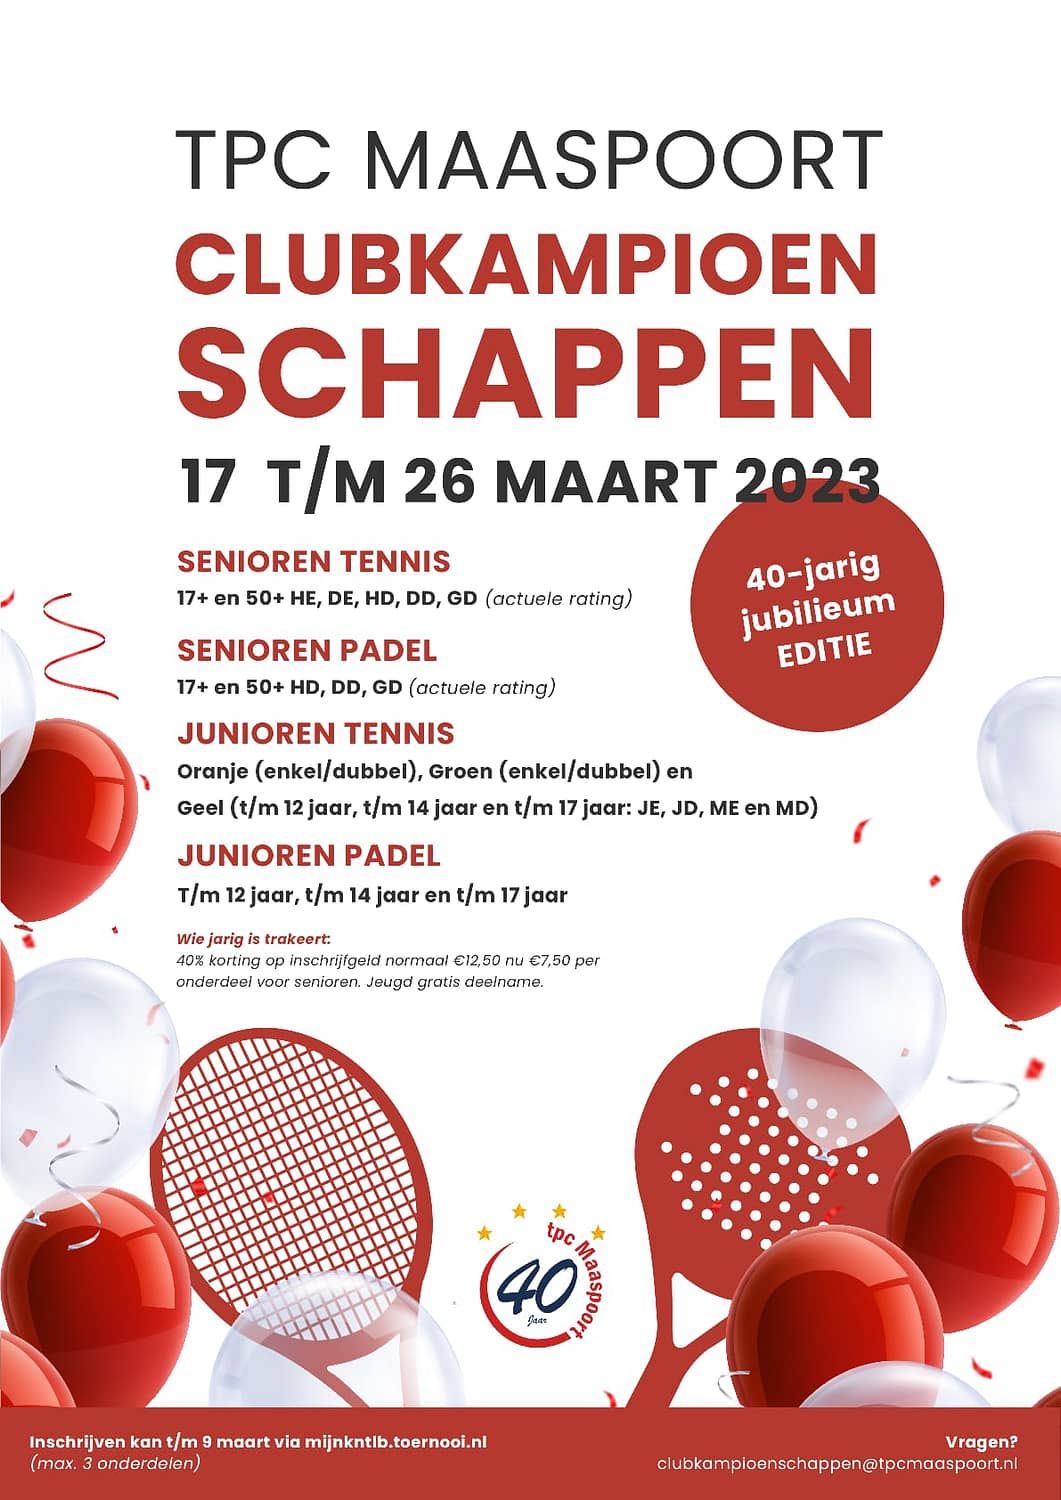 TPC Maaspoort - Clubkampioenschappen